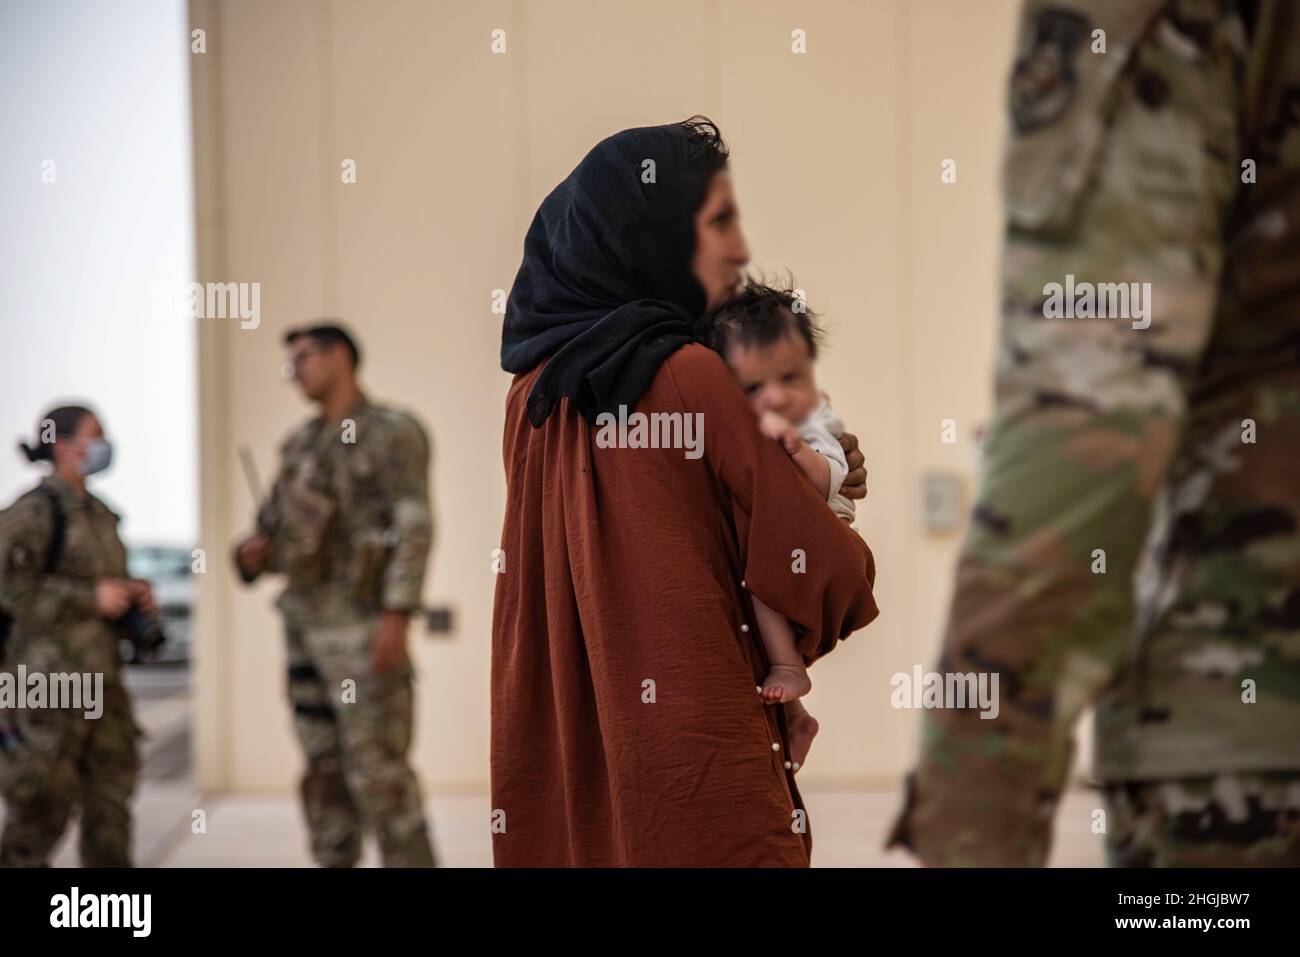 Gli sfollati afghani arrivano il 16 agosto 2021 alla base aerea al Udeid, Qatar. Nell'ambito di operazioni di evacuazione non combattute, gli sfollati sono partiti dall'aeroporto internazionale Hamid Karzai di Kabul, Afghanistan, su più aerei militari. Foto Stock